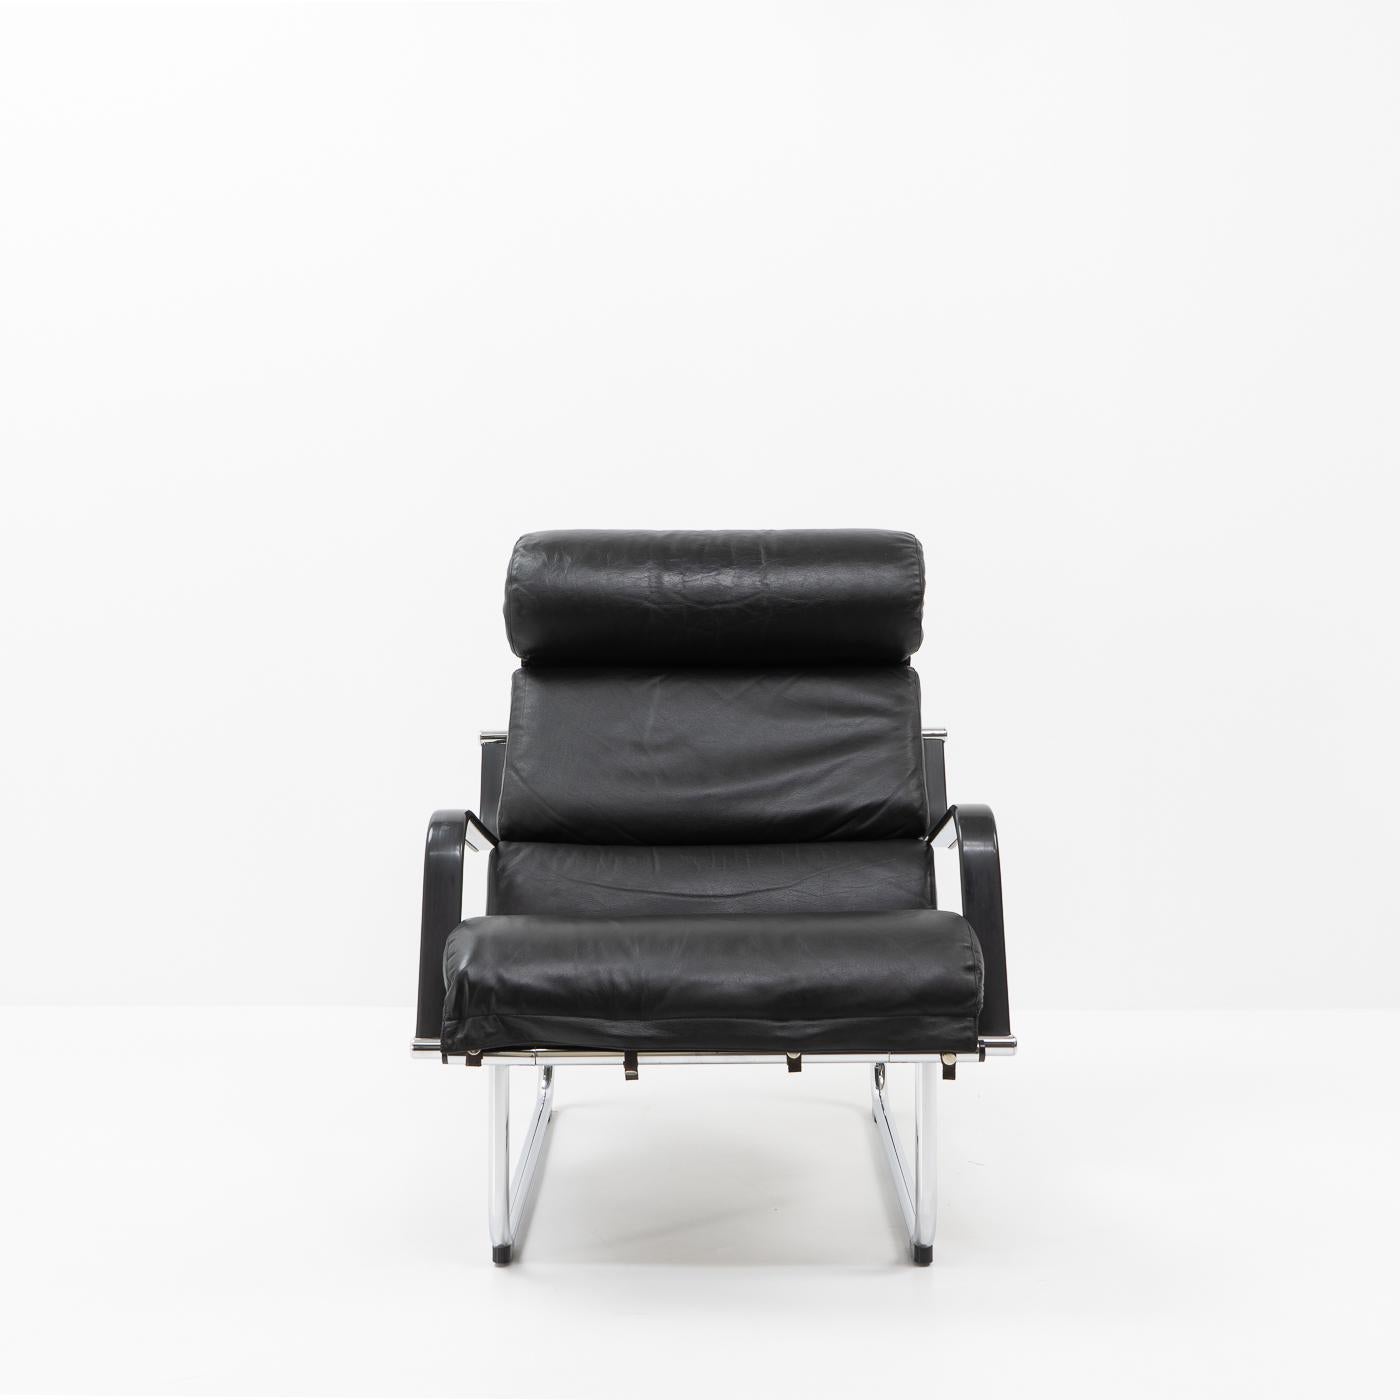 Chaise longue Remmi de Yrjö Kukkapuro, conçue à la fin des années 1960 :

Yrjö Kukkapuro est un designer de meubles et un architecte finlandais connu pour ses conceptions innovantes et fonctionnelles. Il a joué un rôle important dans l'élaboration